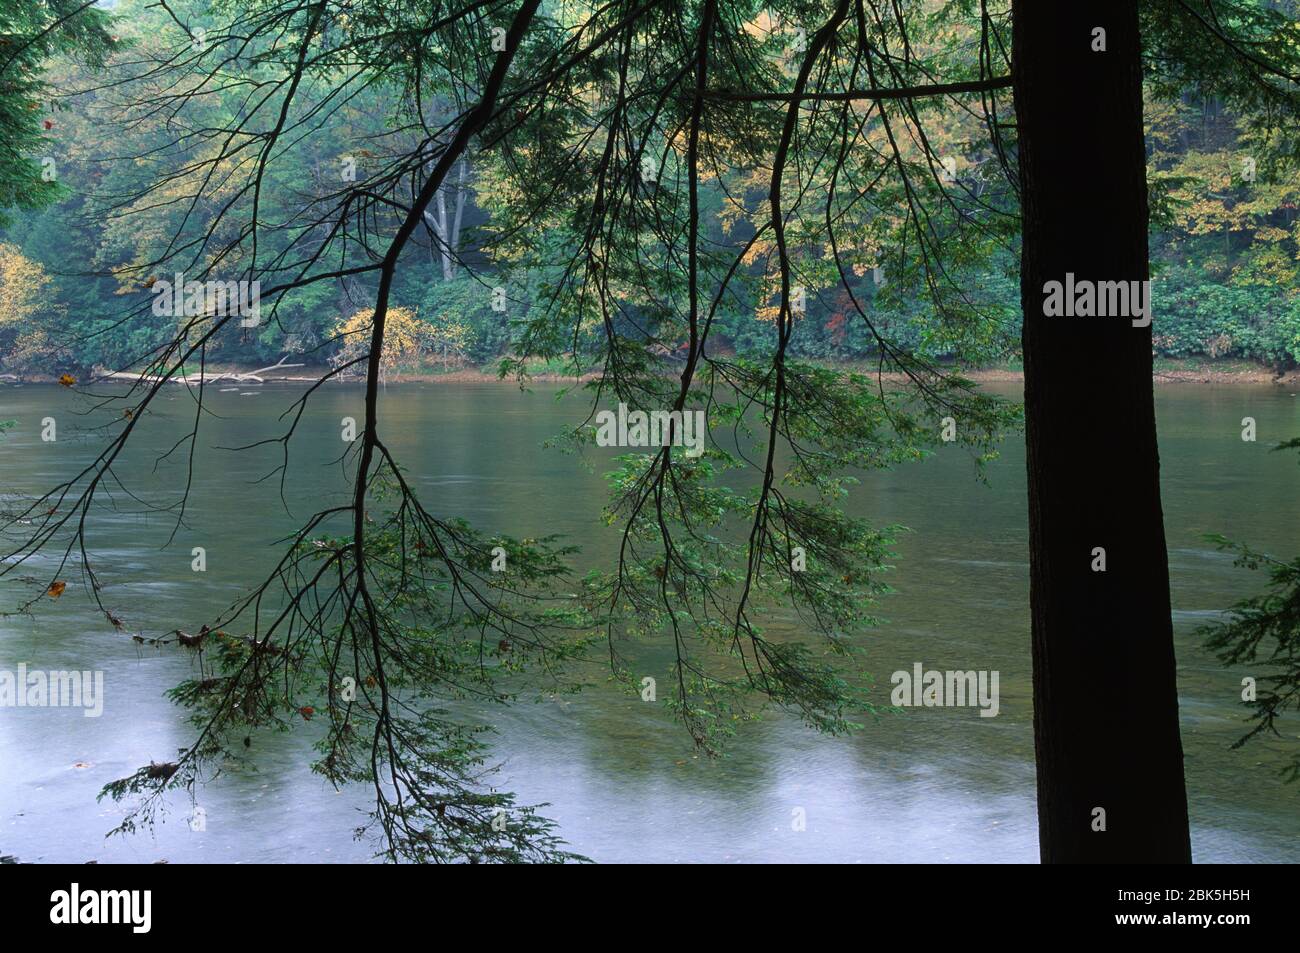 Clarion Wild et Scenic River, parc national de Cook Forest, Pennsylvanie Banque D'Images